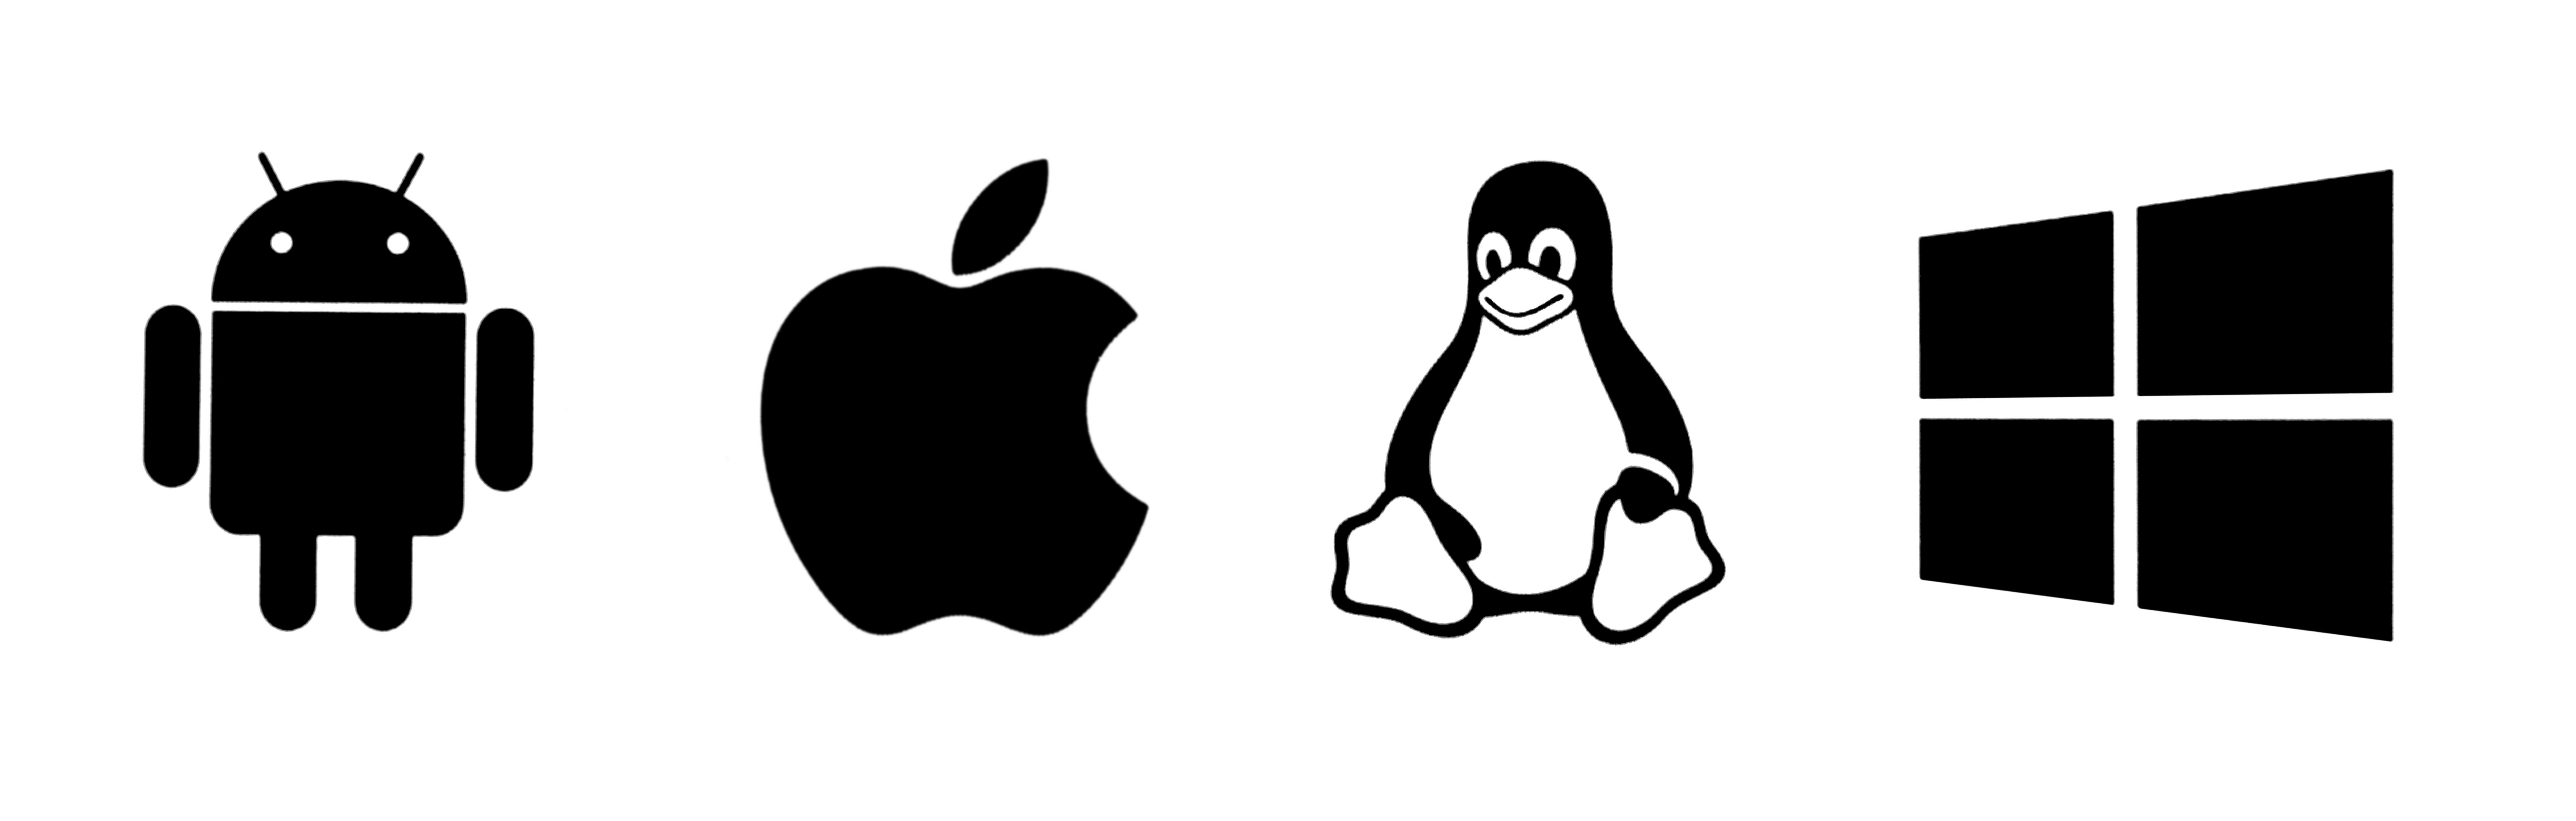 Символ операционной системы. Значок операционной системы. Операционные системы иконка. Логотип операционной системы. Символы операционной систем.